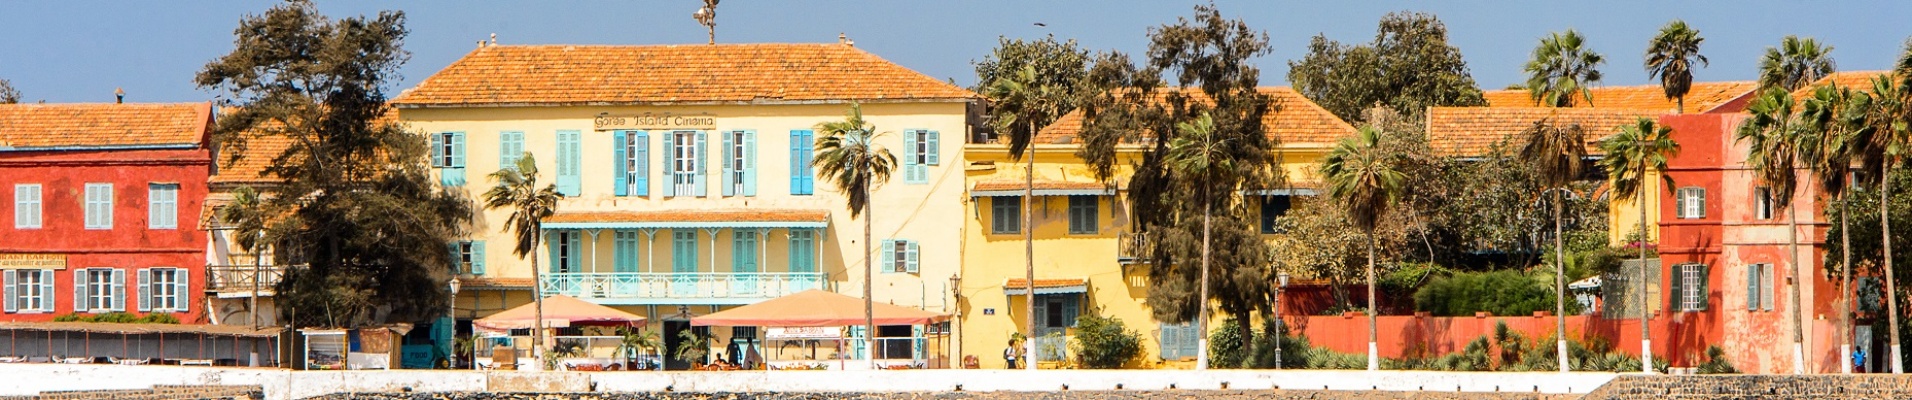 Maisons colorées de Gorée depuis la mer